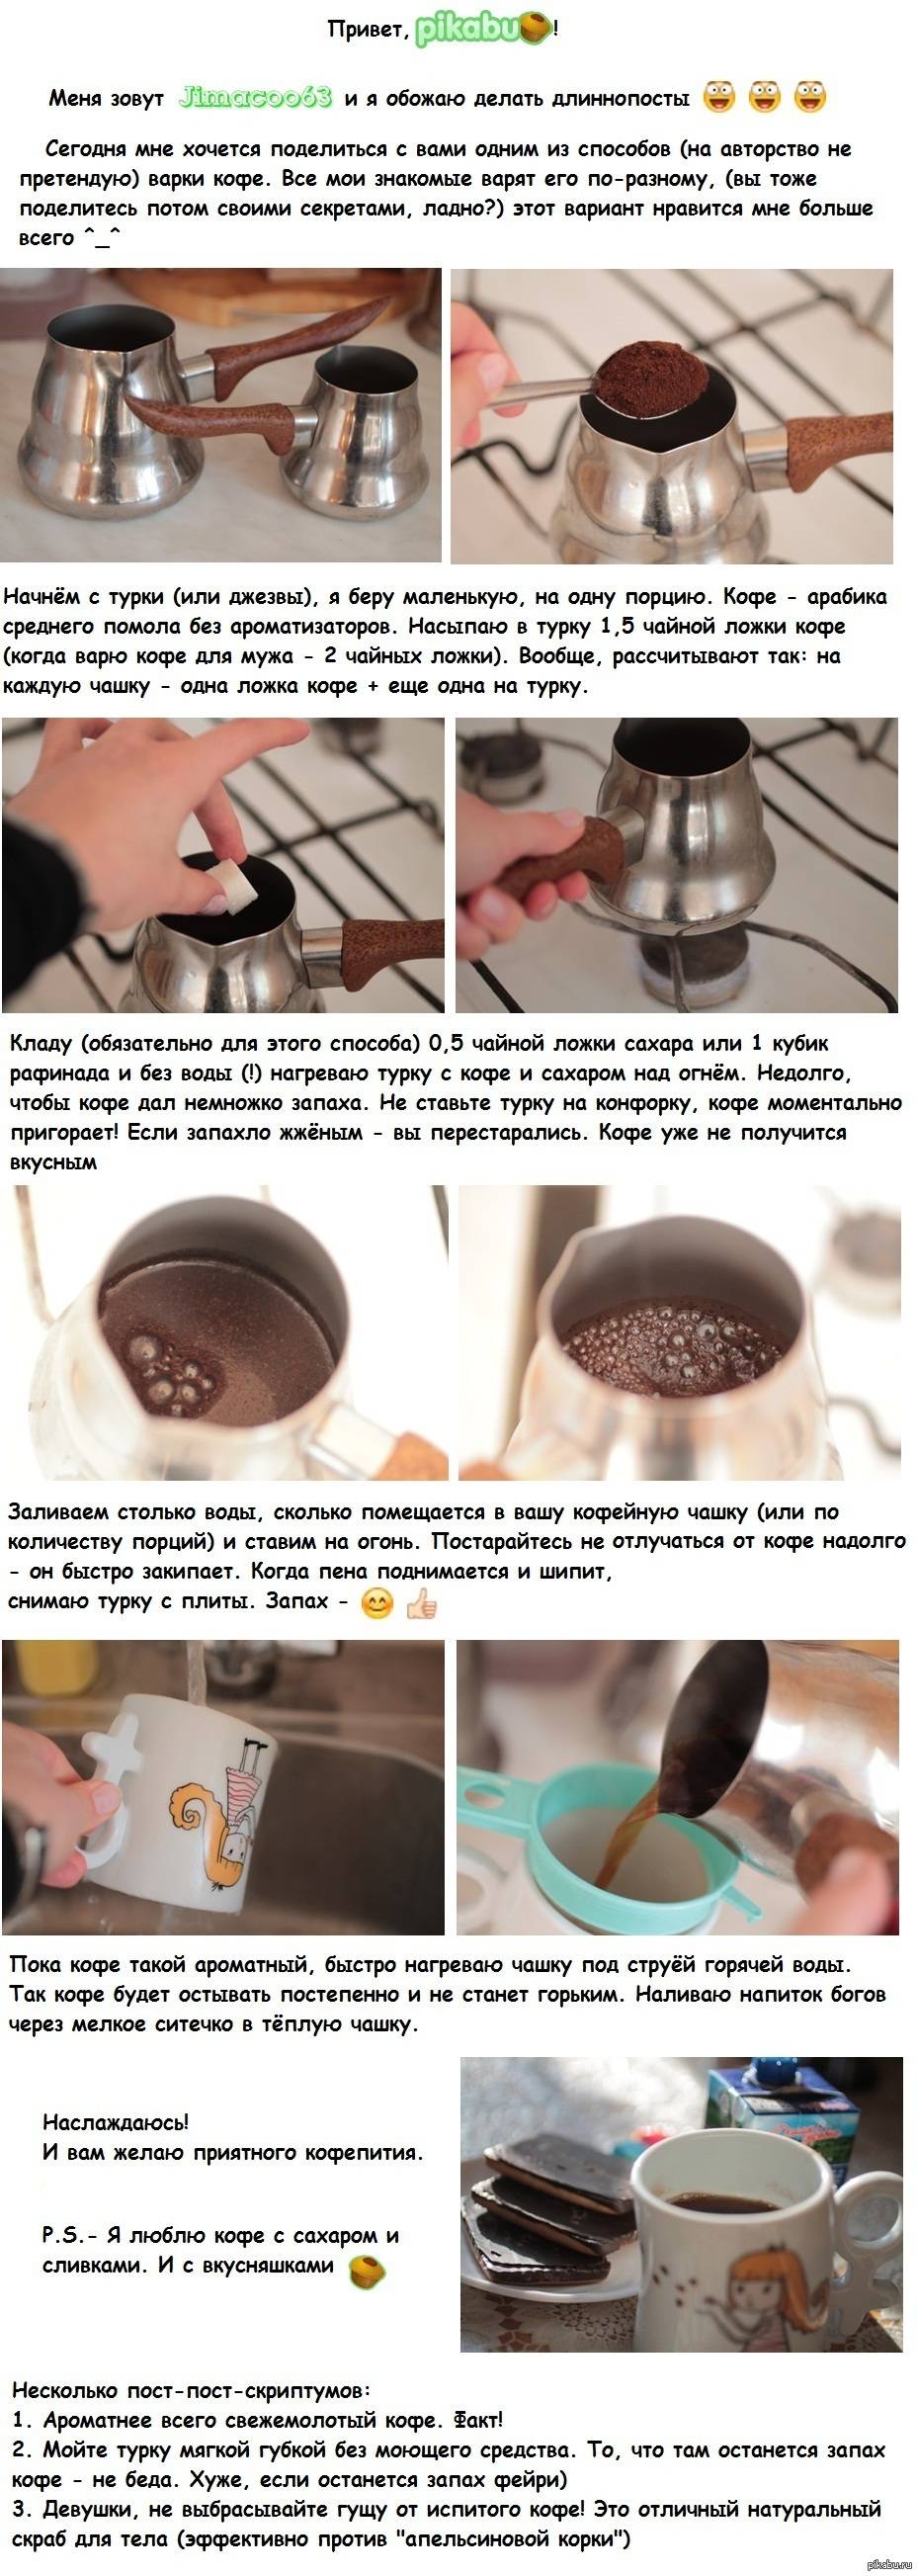 Как пользоваться кофеваркой гейзерного типа